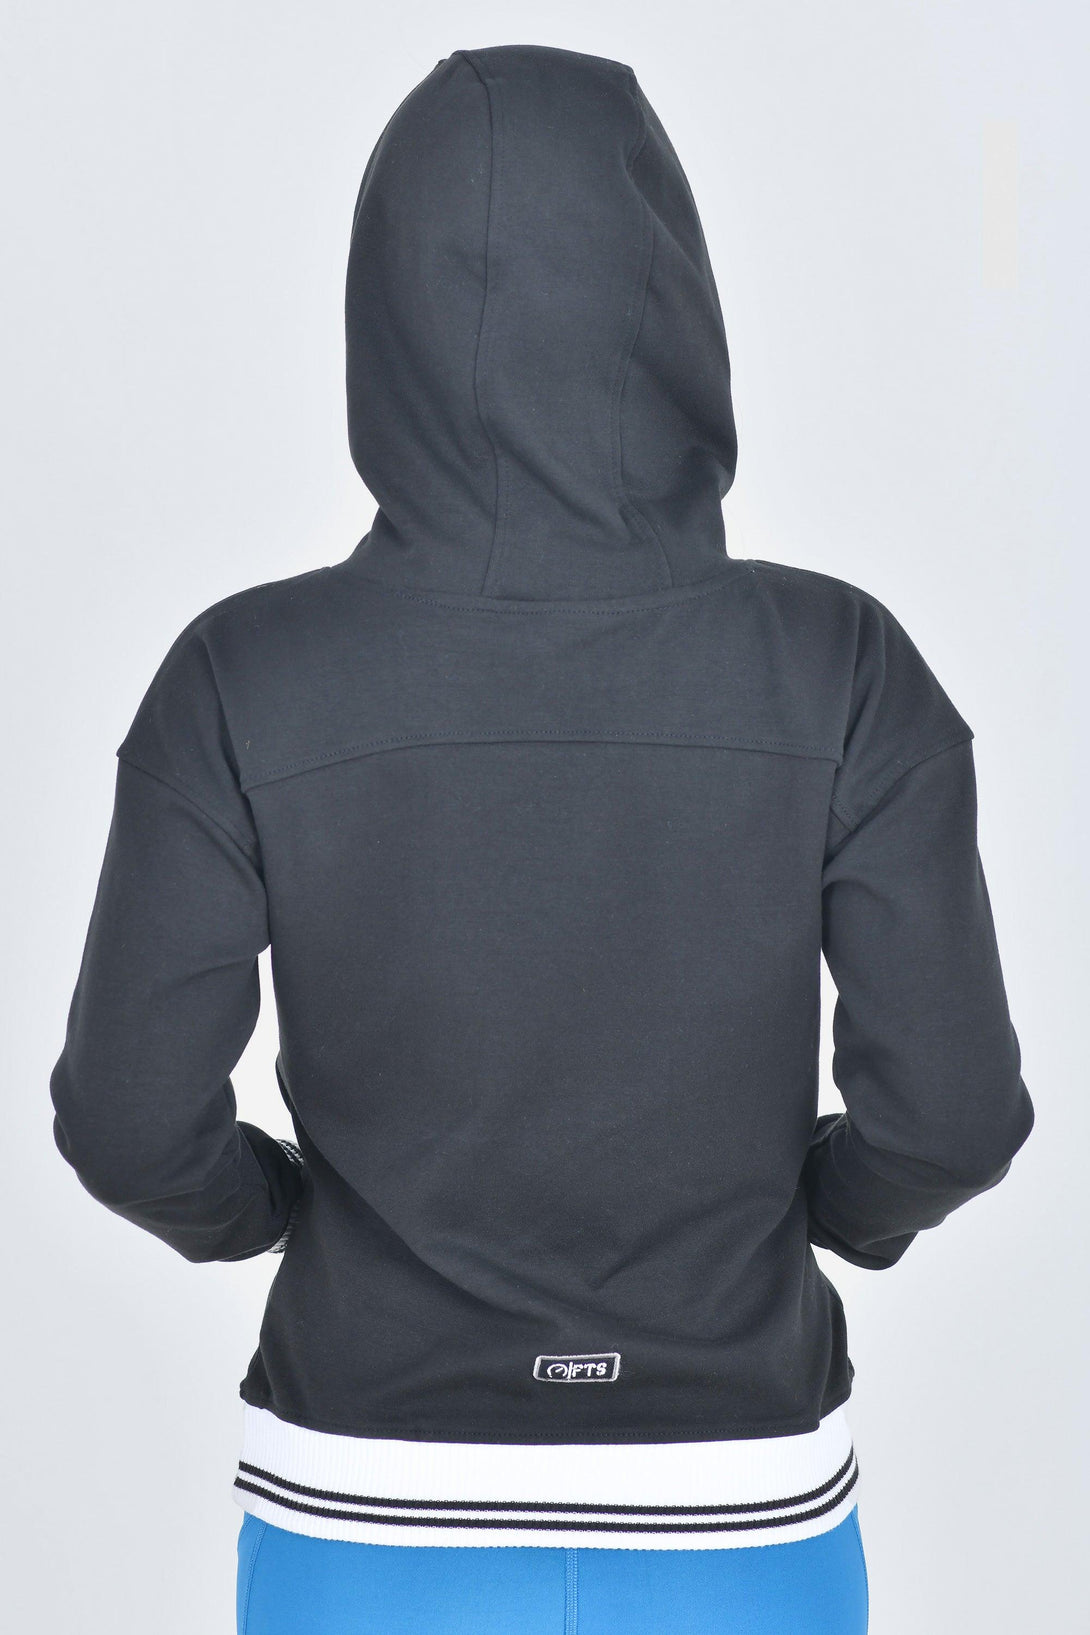 Damen-Hoodie mit 2 Reißverschlusstaschen | Schwarze Farbe - Full Time Sports Germany 